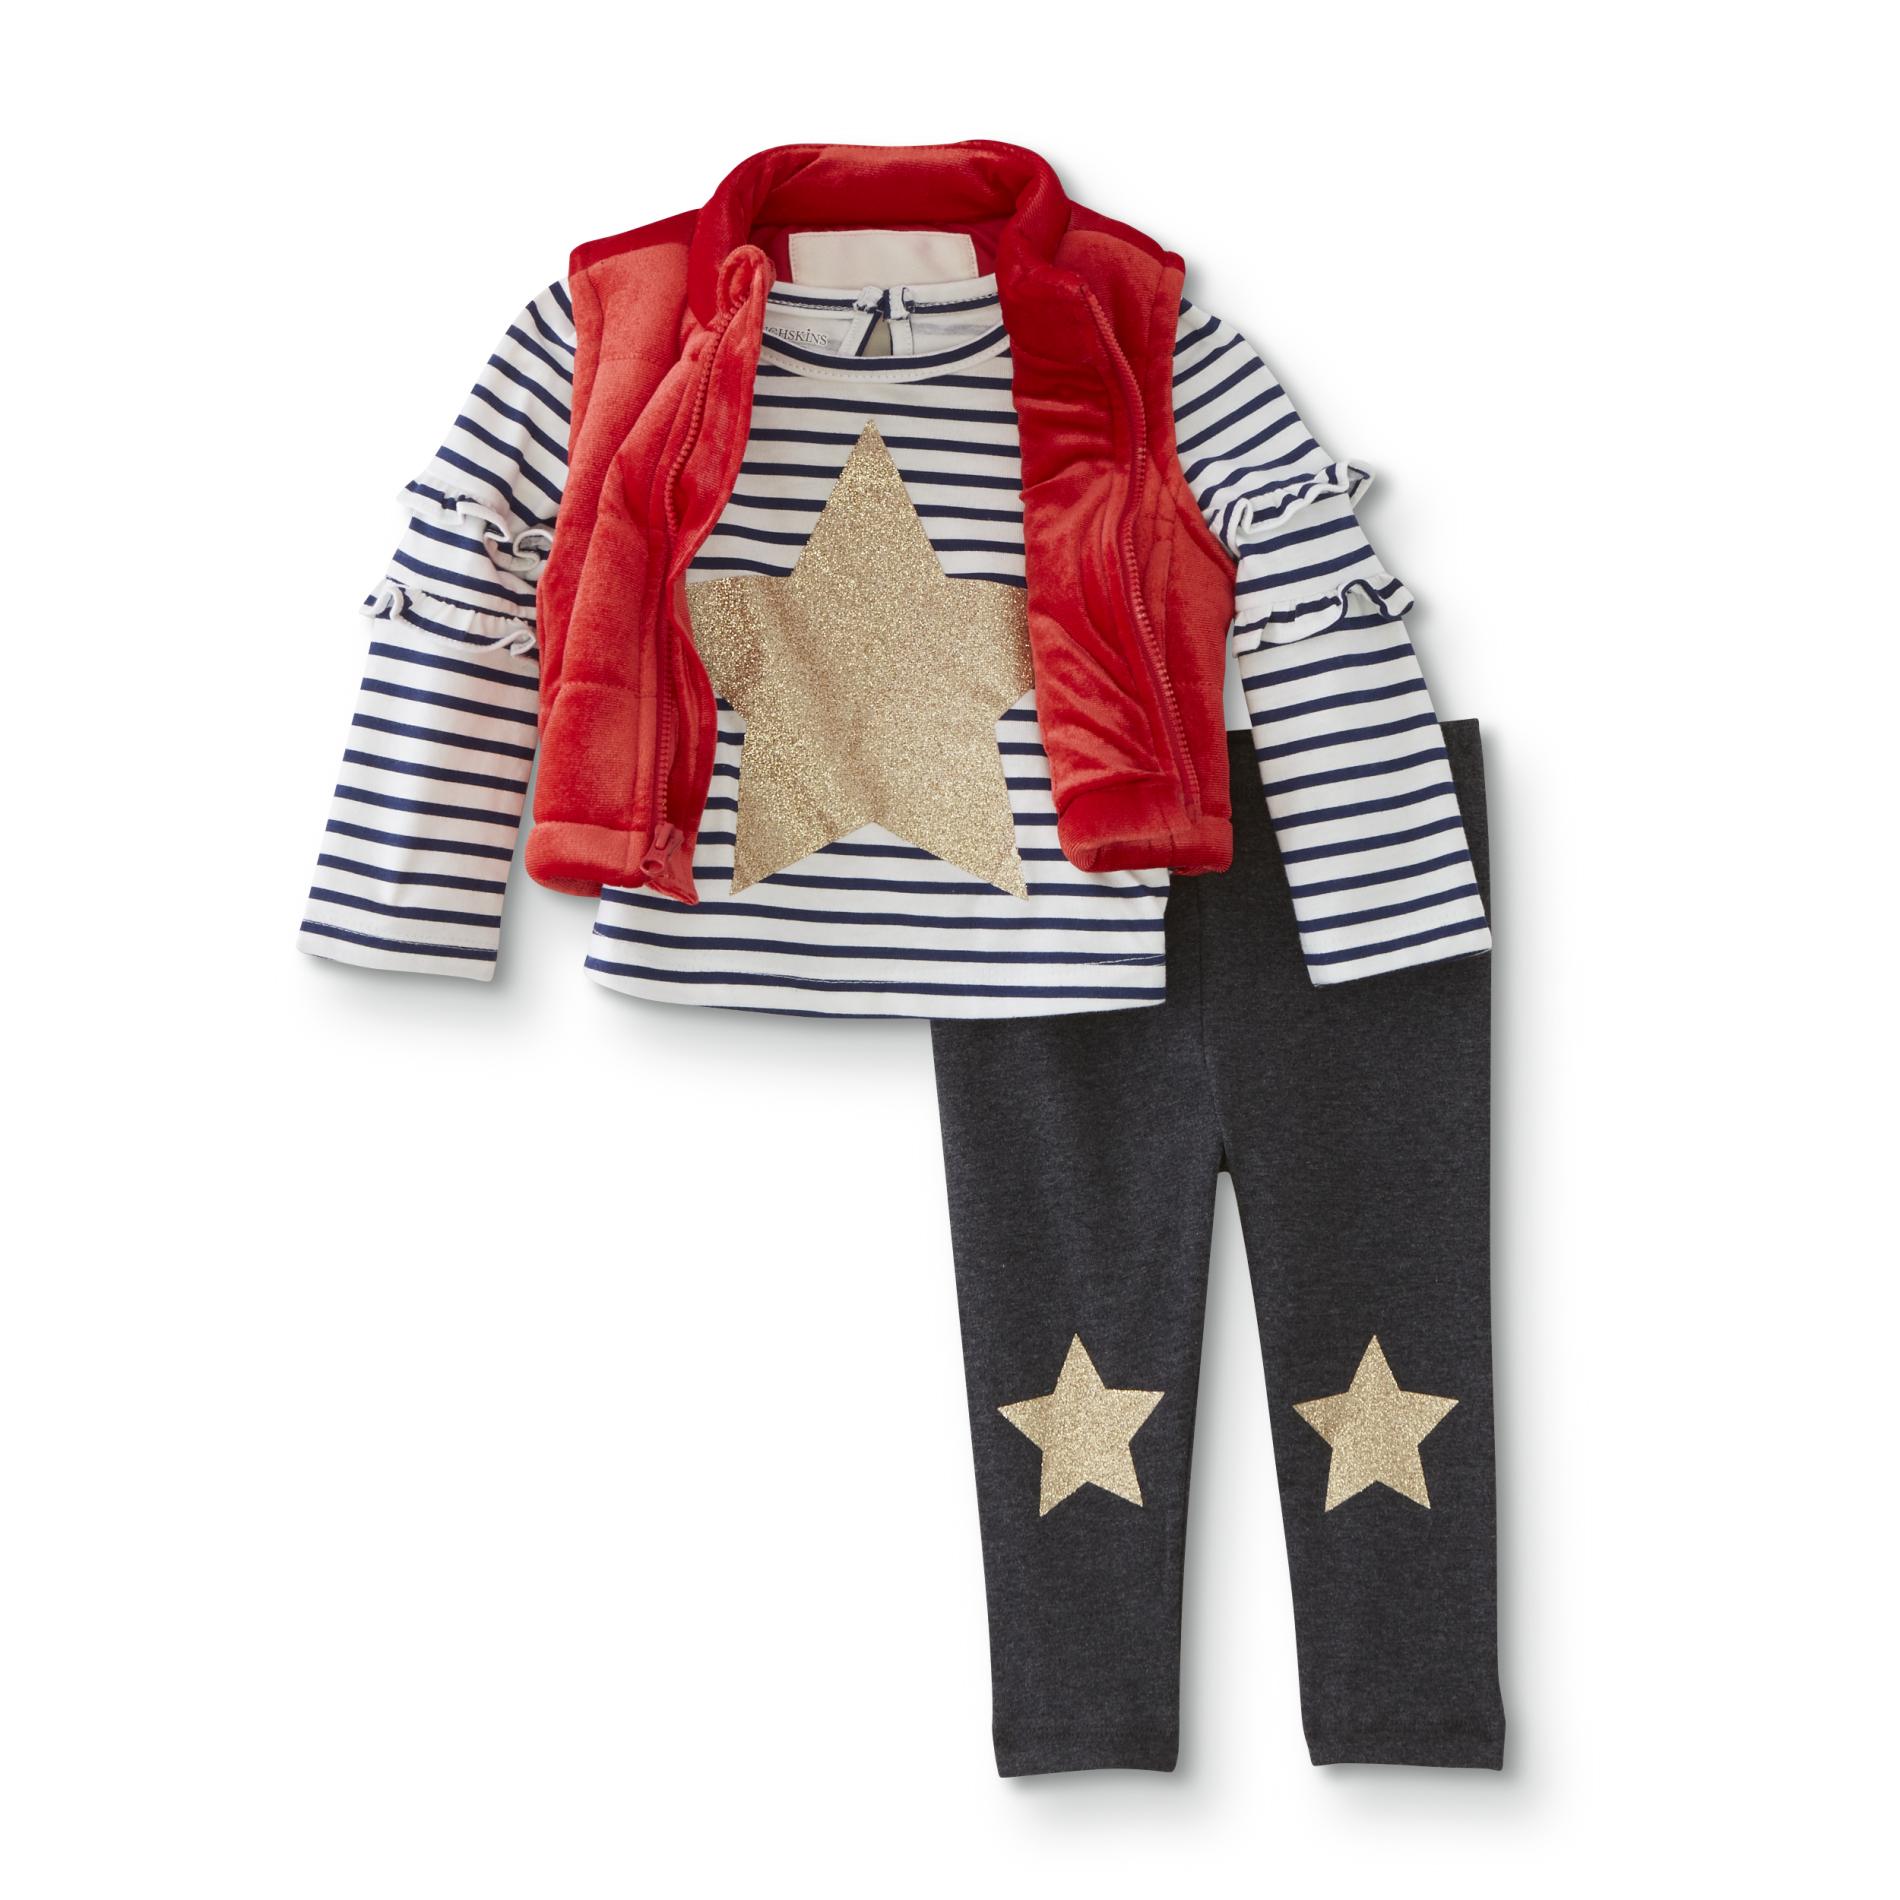 Toughskins Infant & Toddler Girls' Top, Puffer Vest & Leggings - Star/Striped